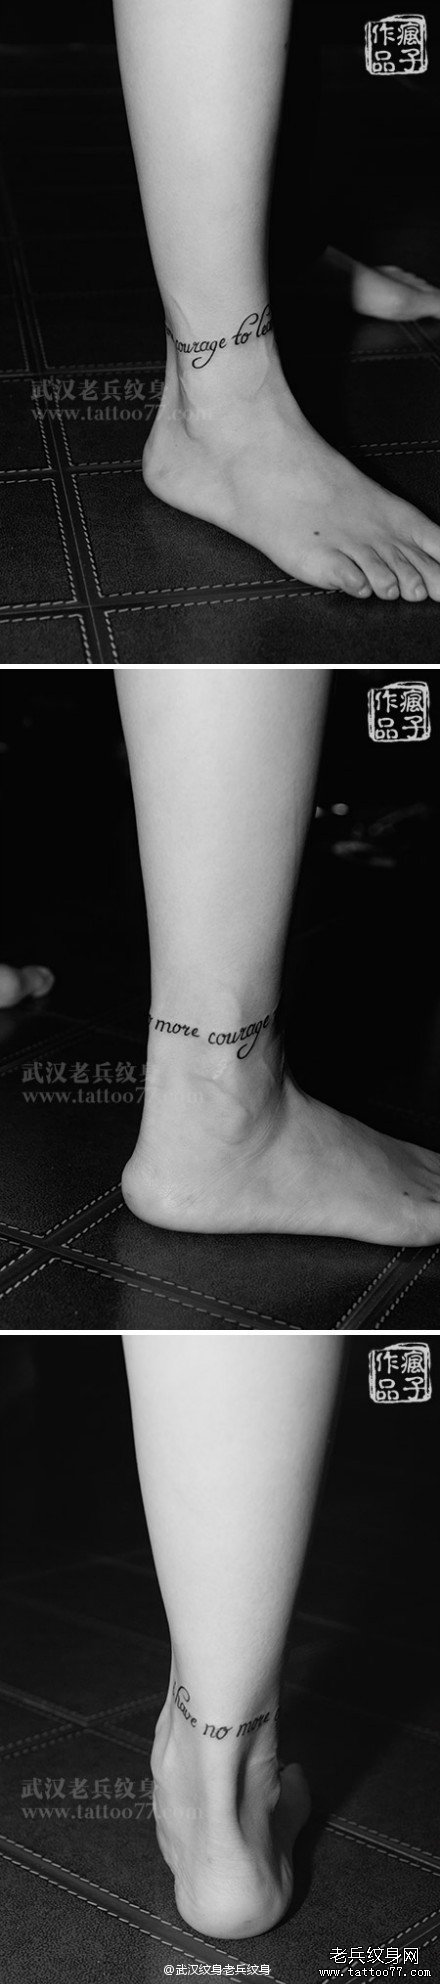 纹身爱好者们喜欢的脚踝一圈字母纹身图案作品